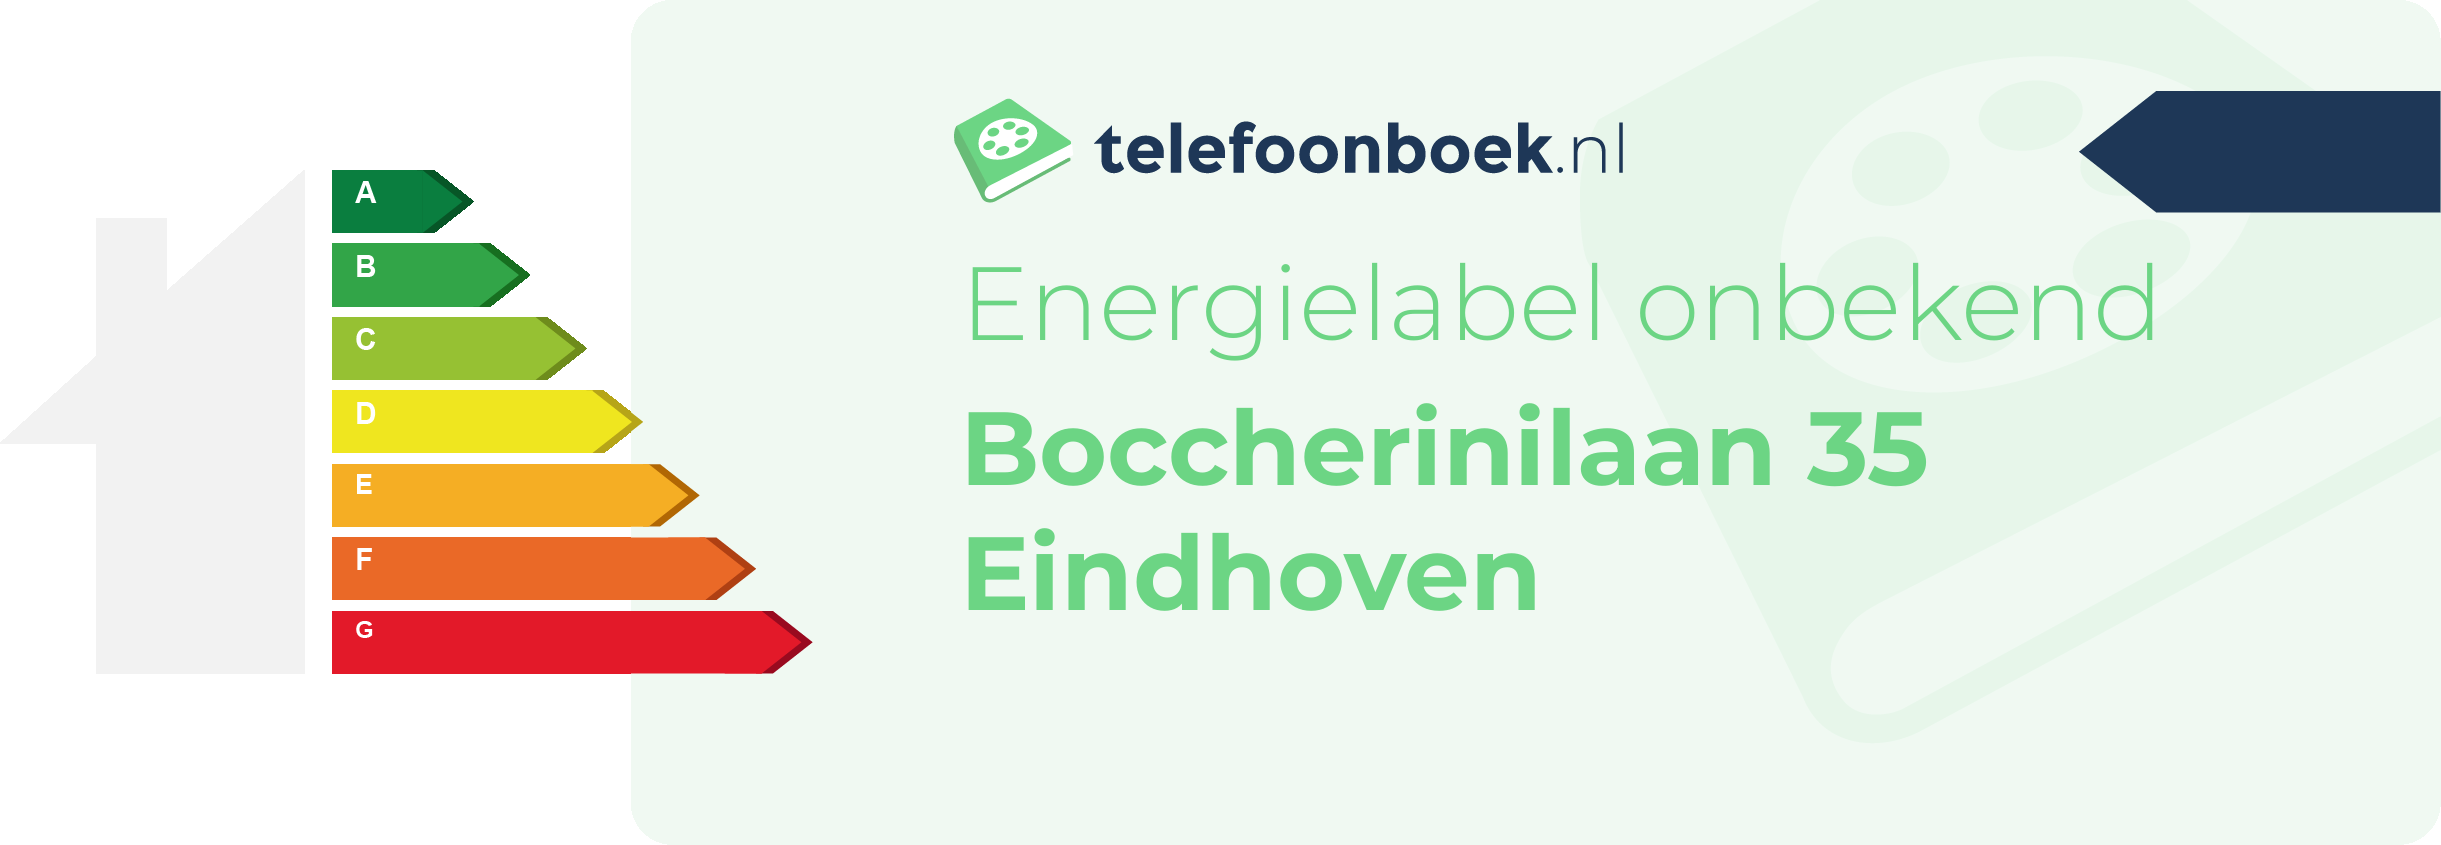 Energielabel Boccherinilaan 35 Eindhoven